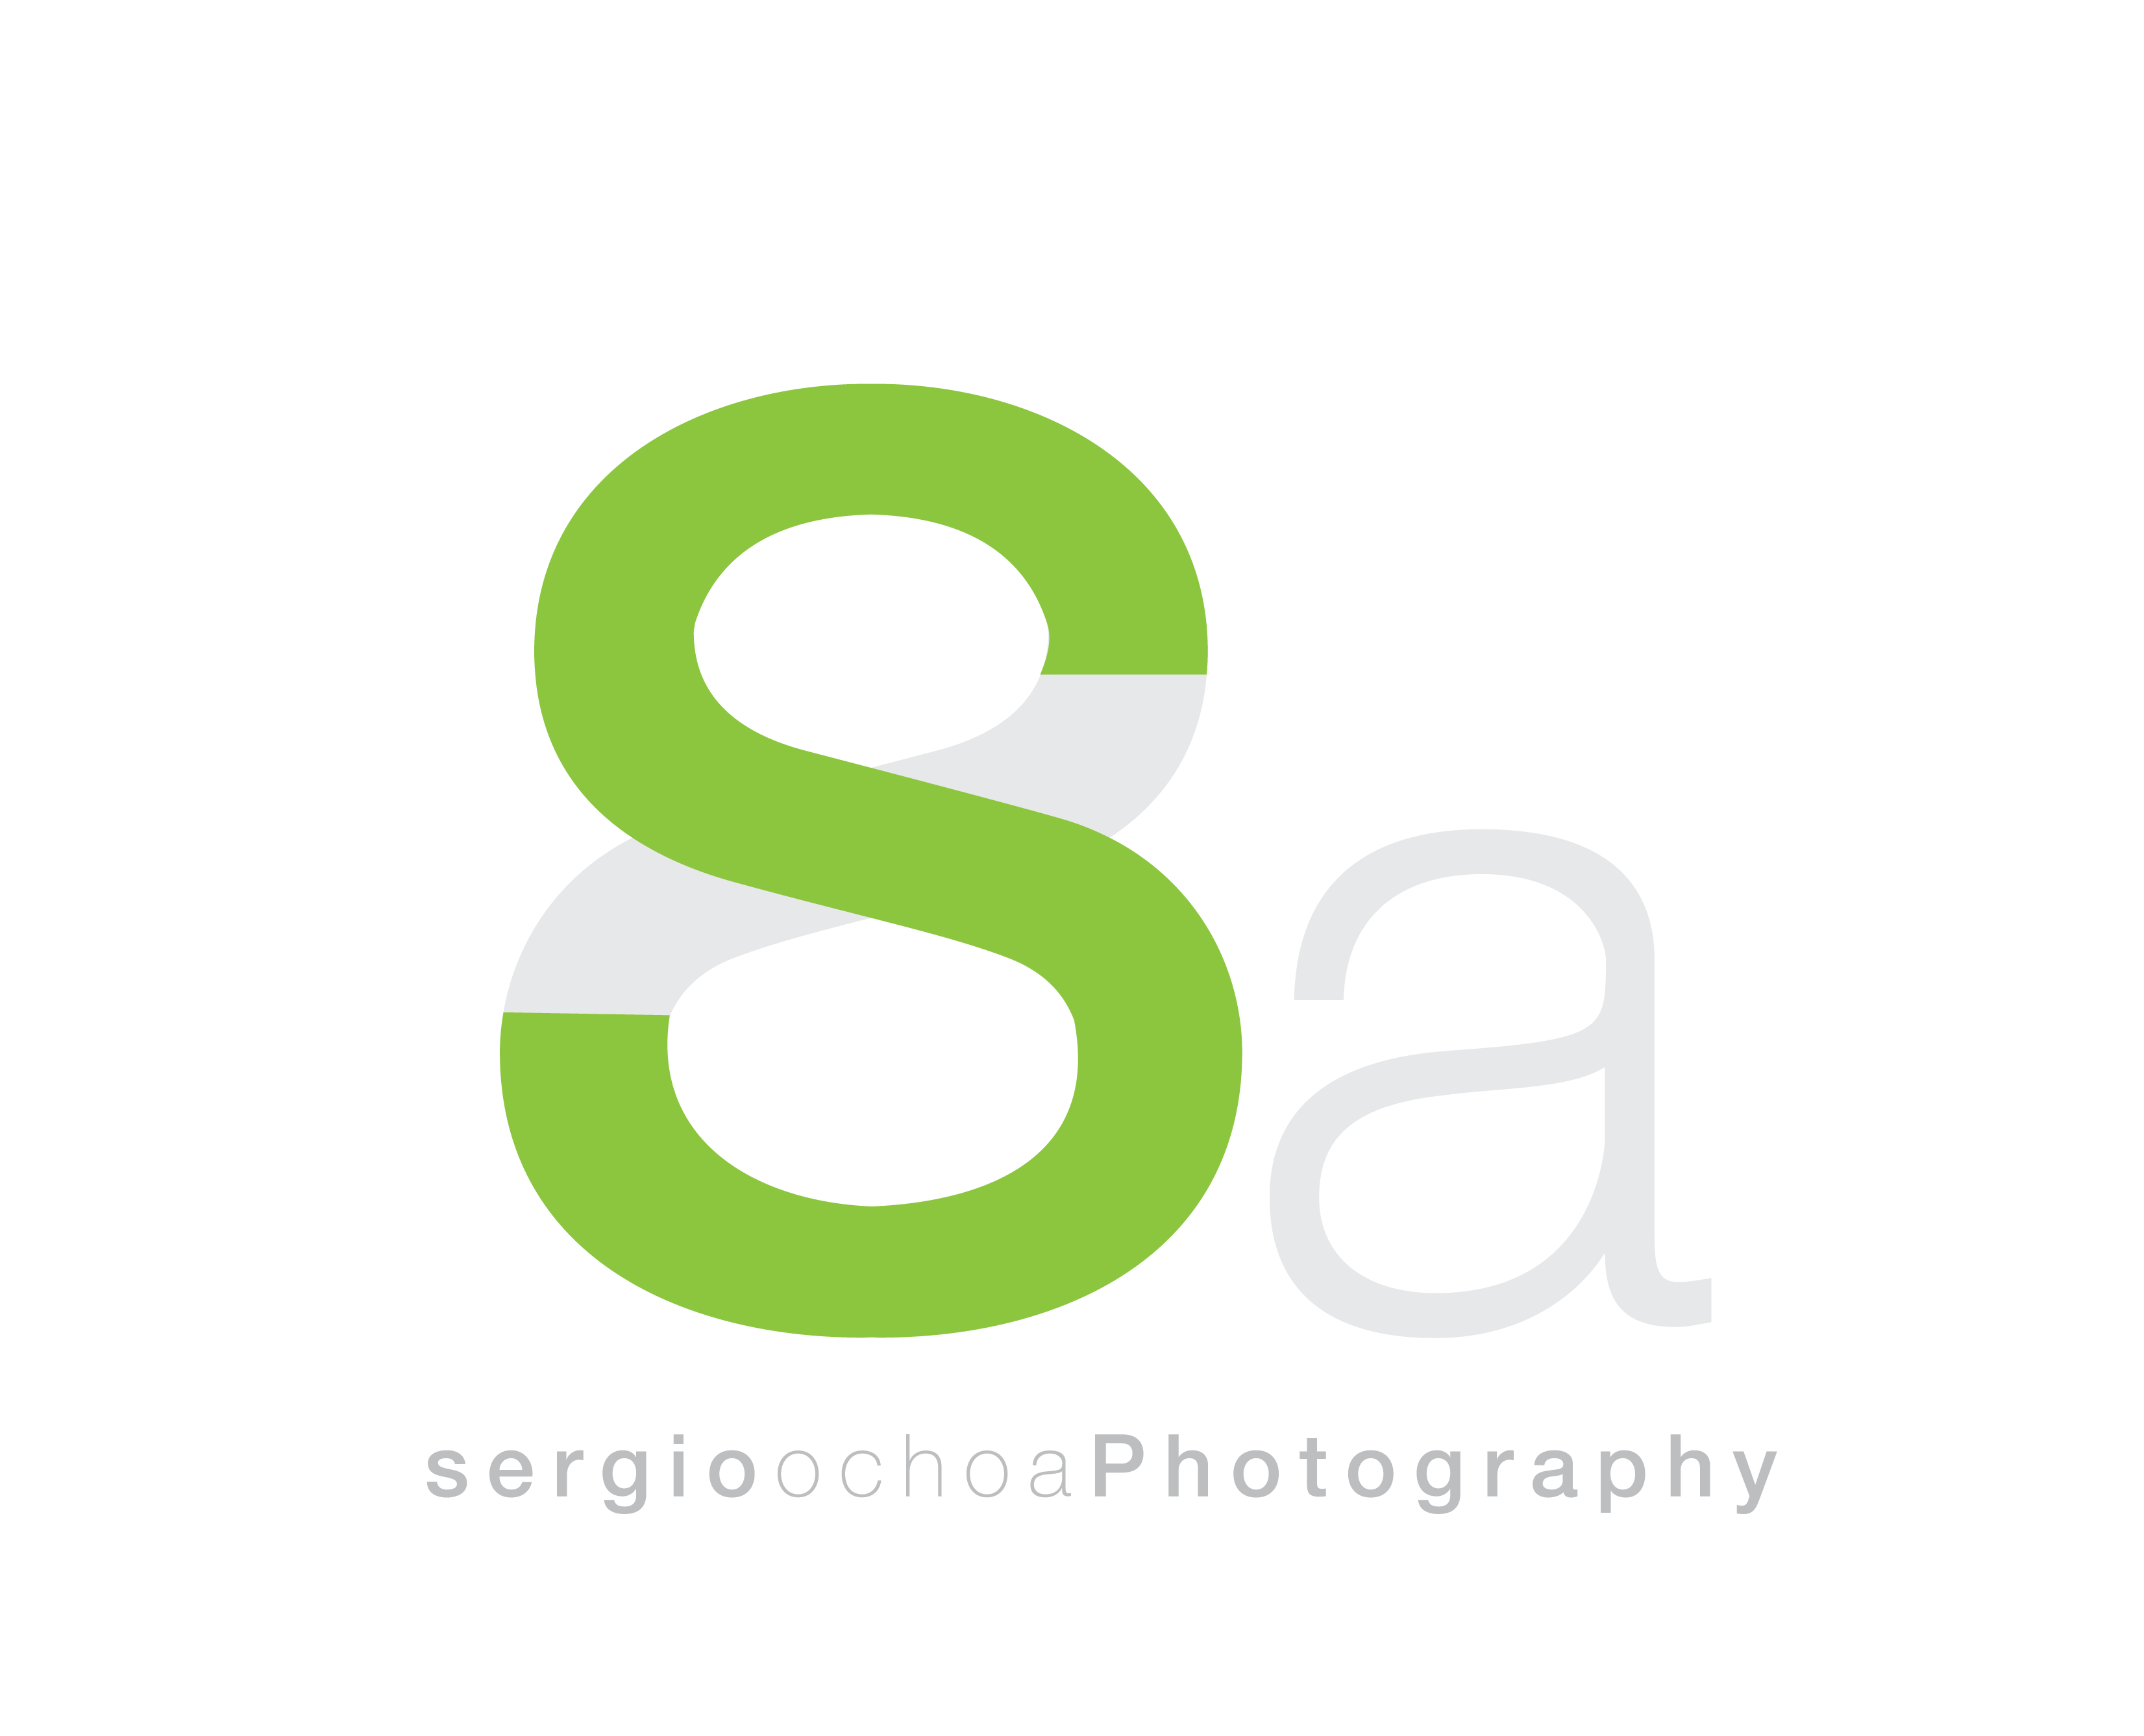 Sergio8a – Fotografía